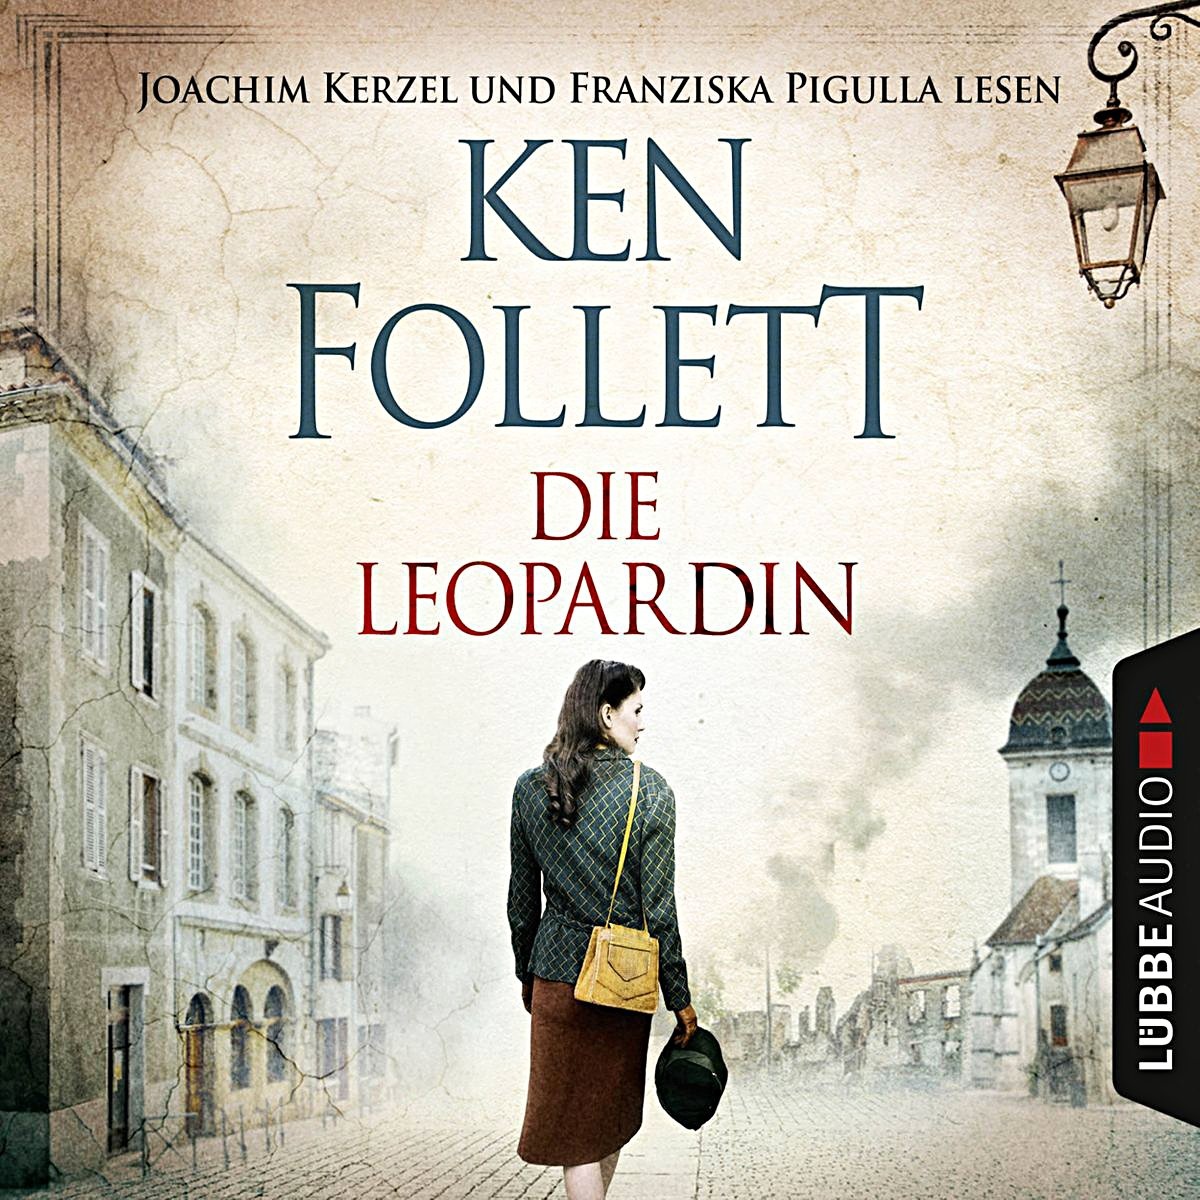 Die Leopardin 6 Audio-Cds - Ken Follett (Hörbuch)